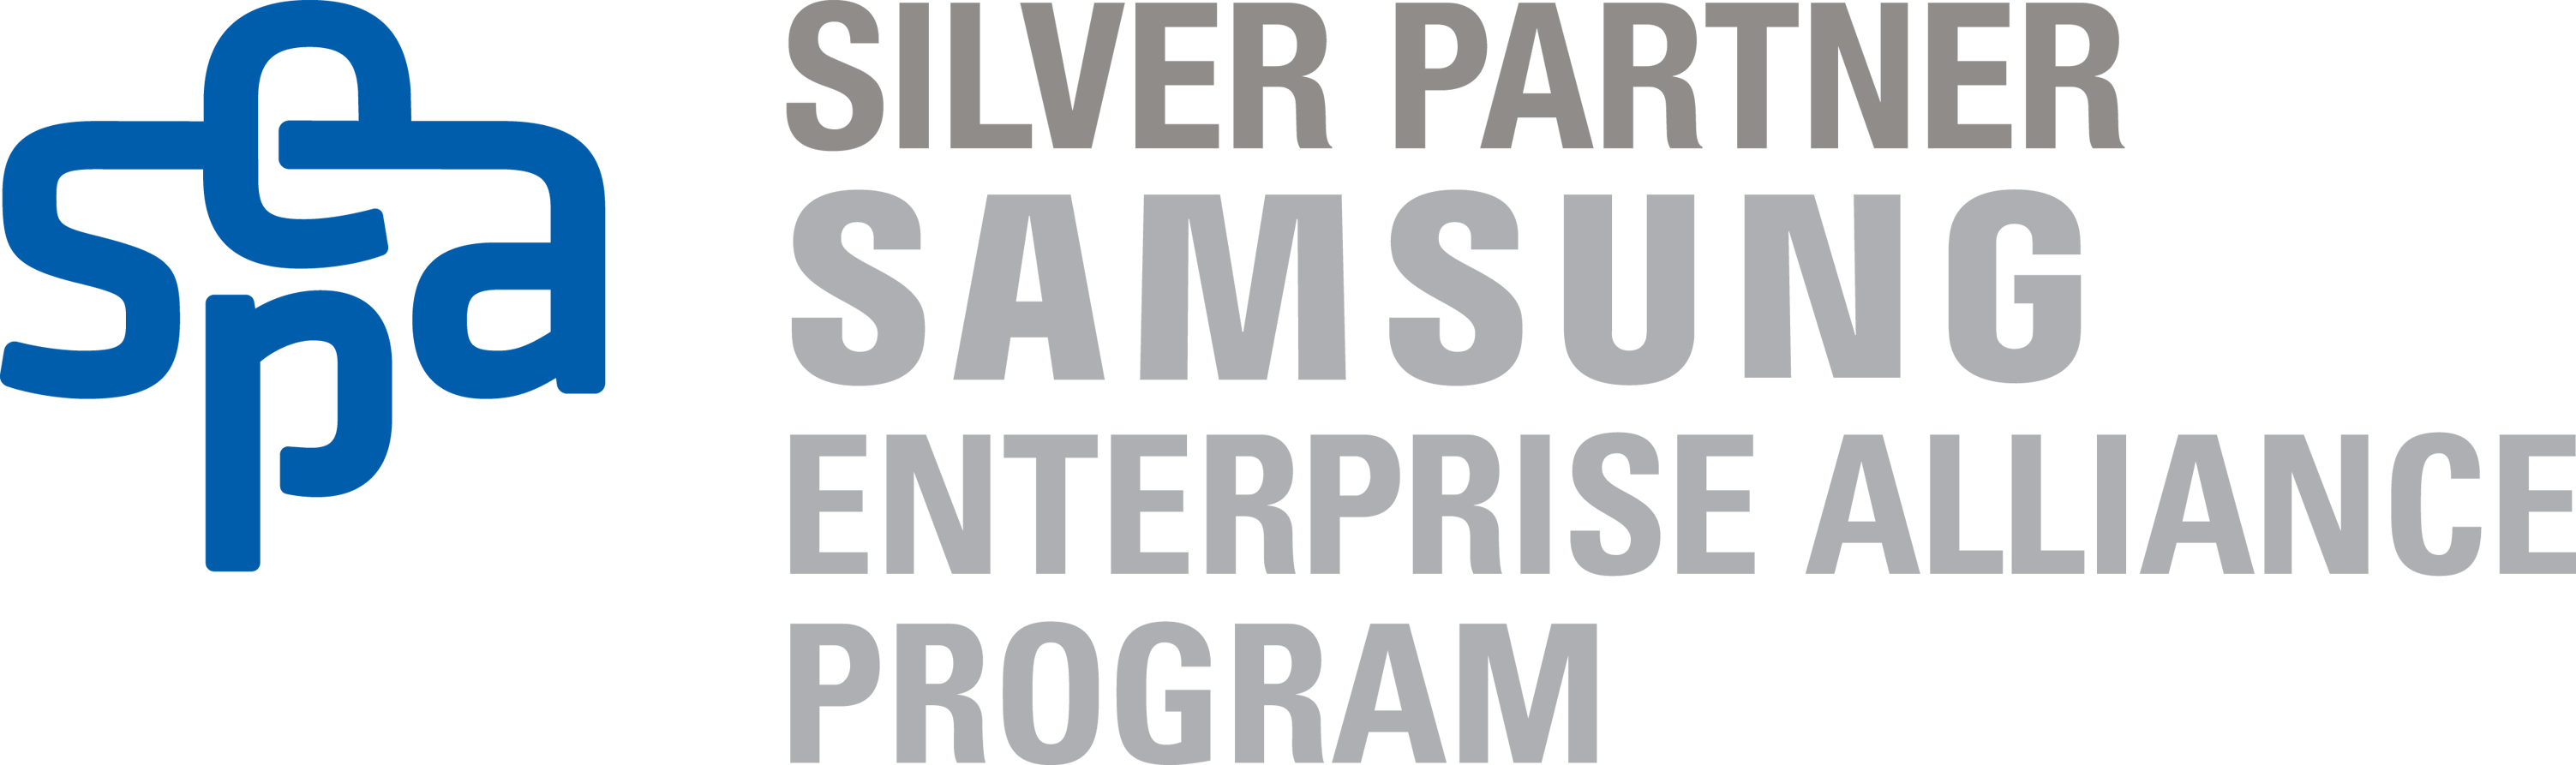 Samsung Enterprise Alliance Program Partner